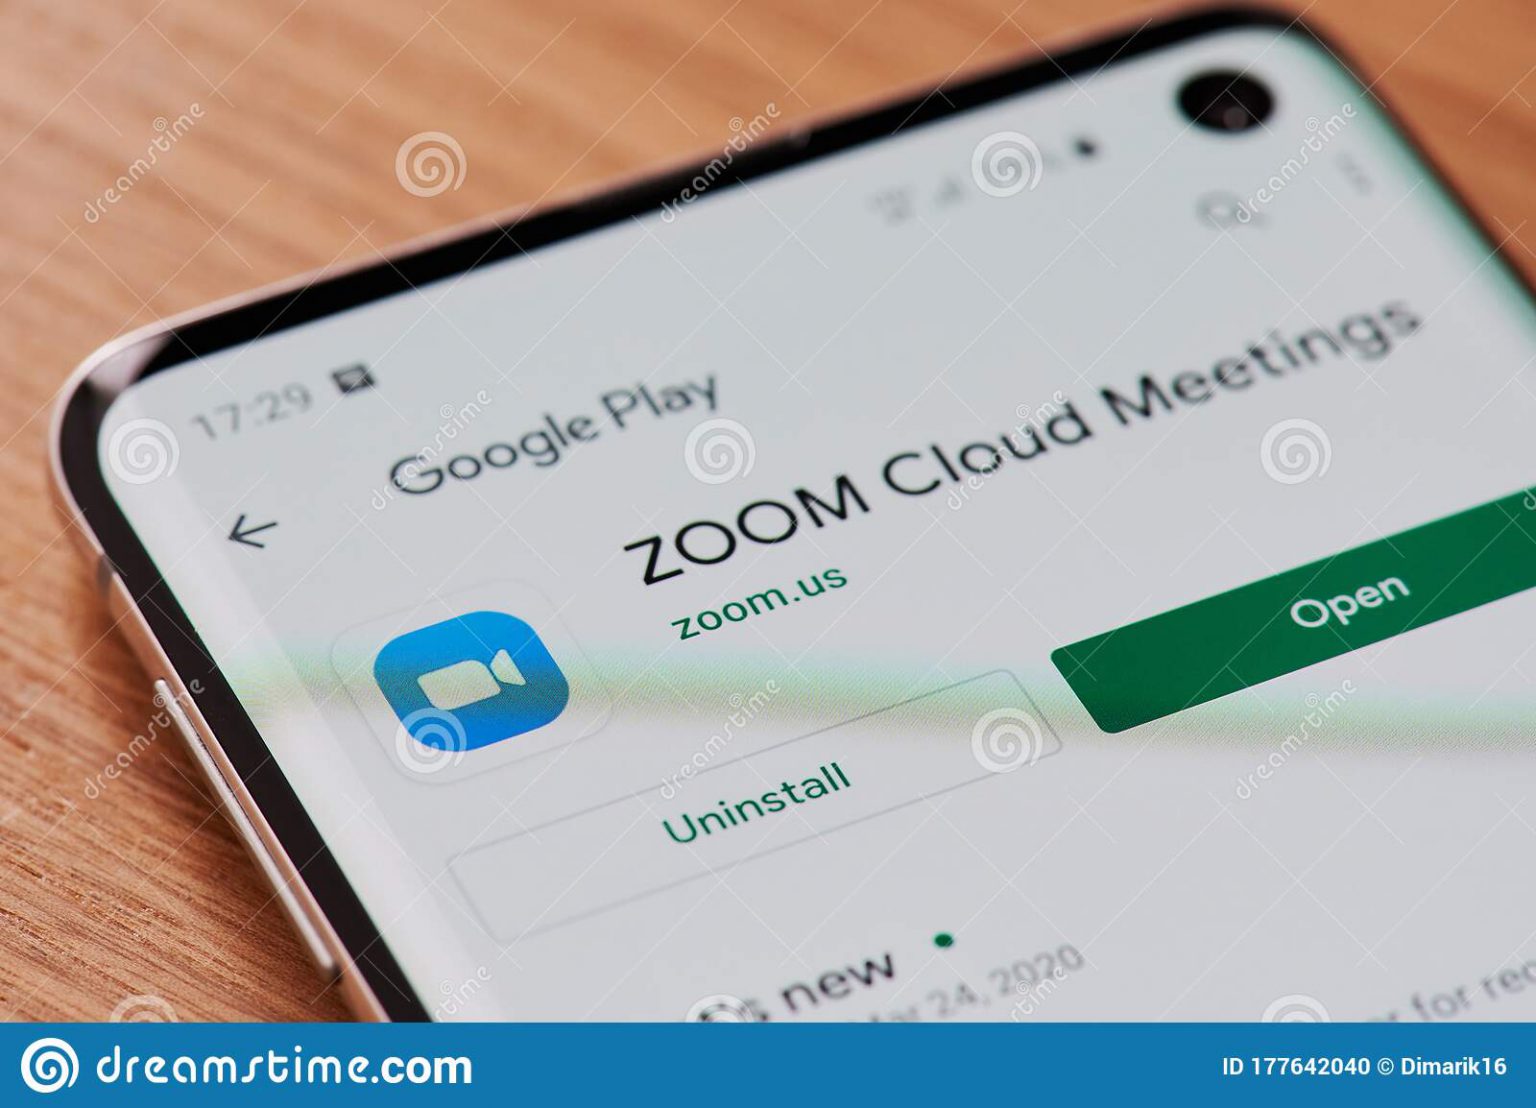 zoom cloud meeting app free